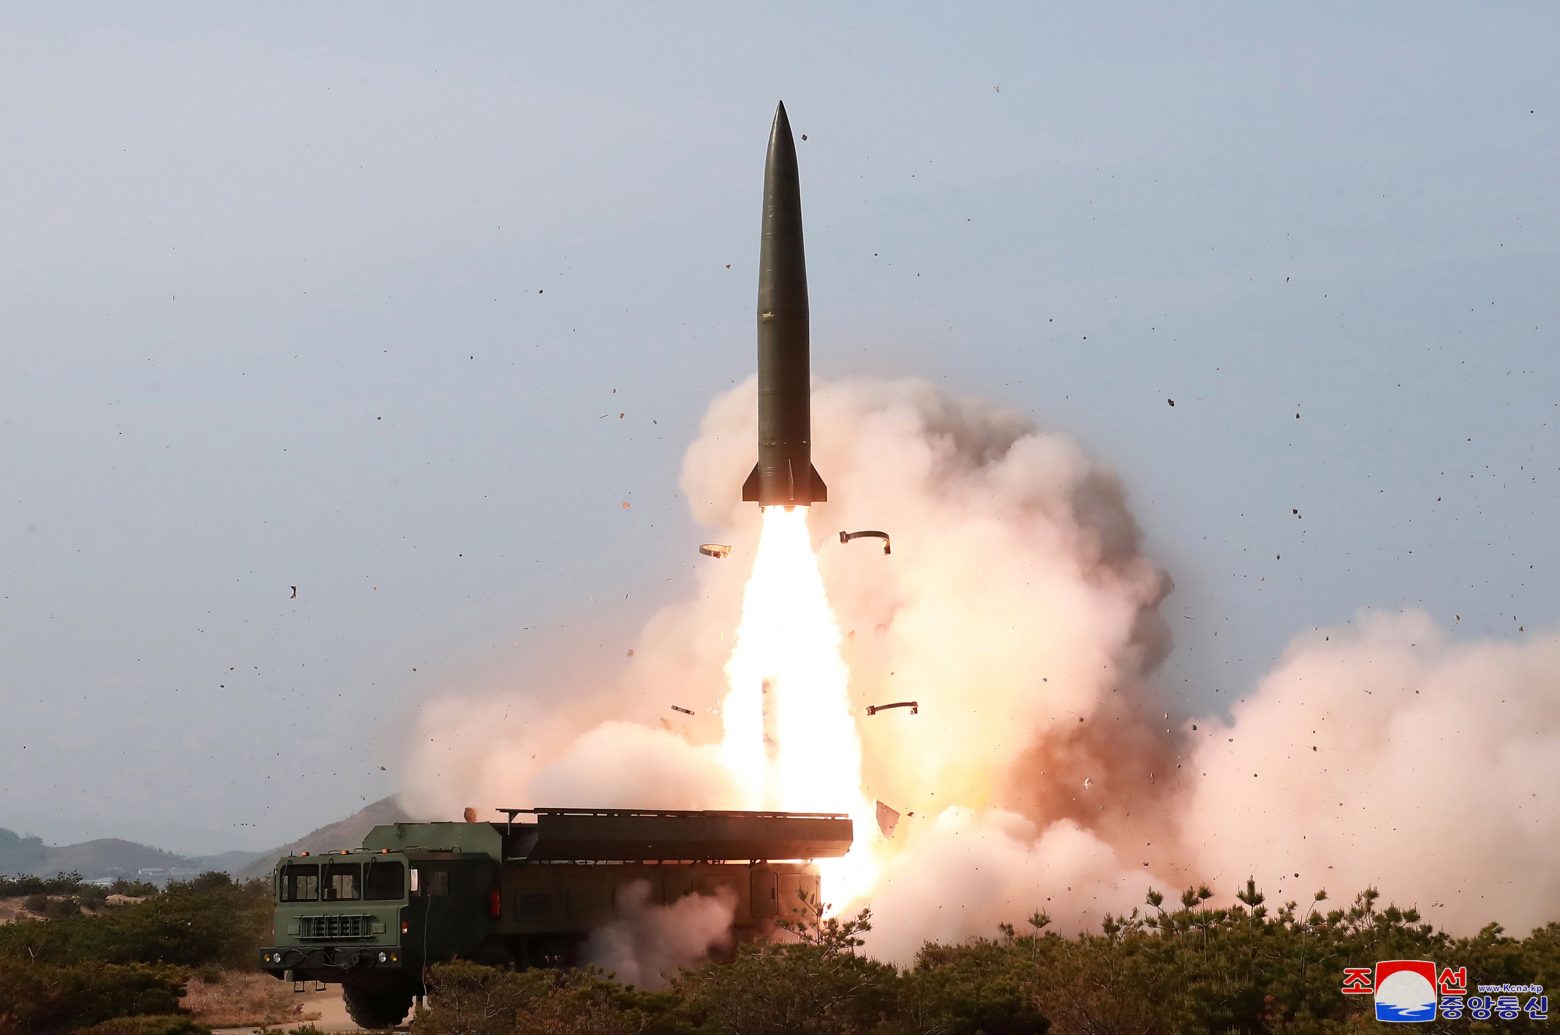 Βόρεια Κορέα – Ανακοίνωσε ότι εκτόξευσε νέο υπερηχητικό πύραυλο [βίντεο]